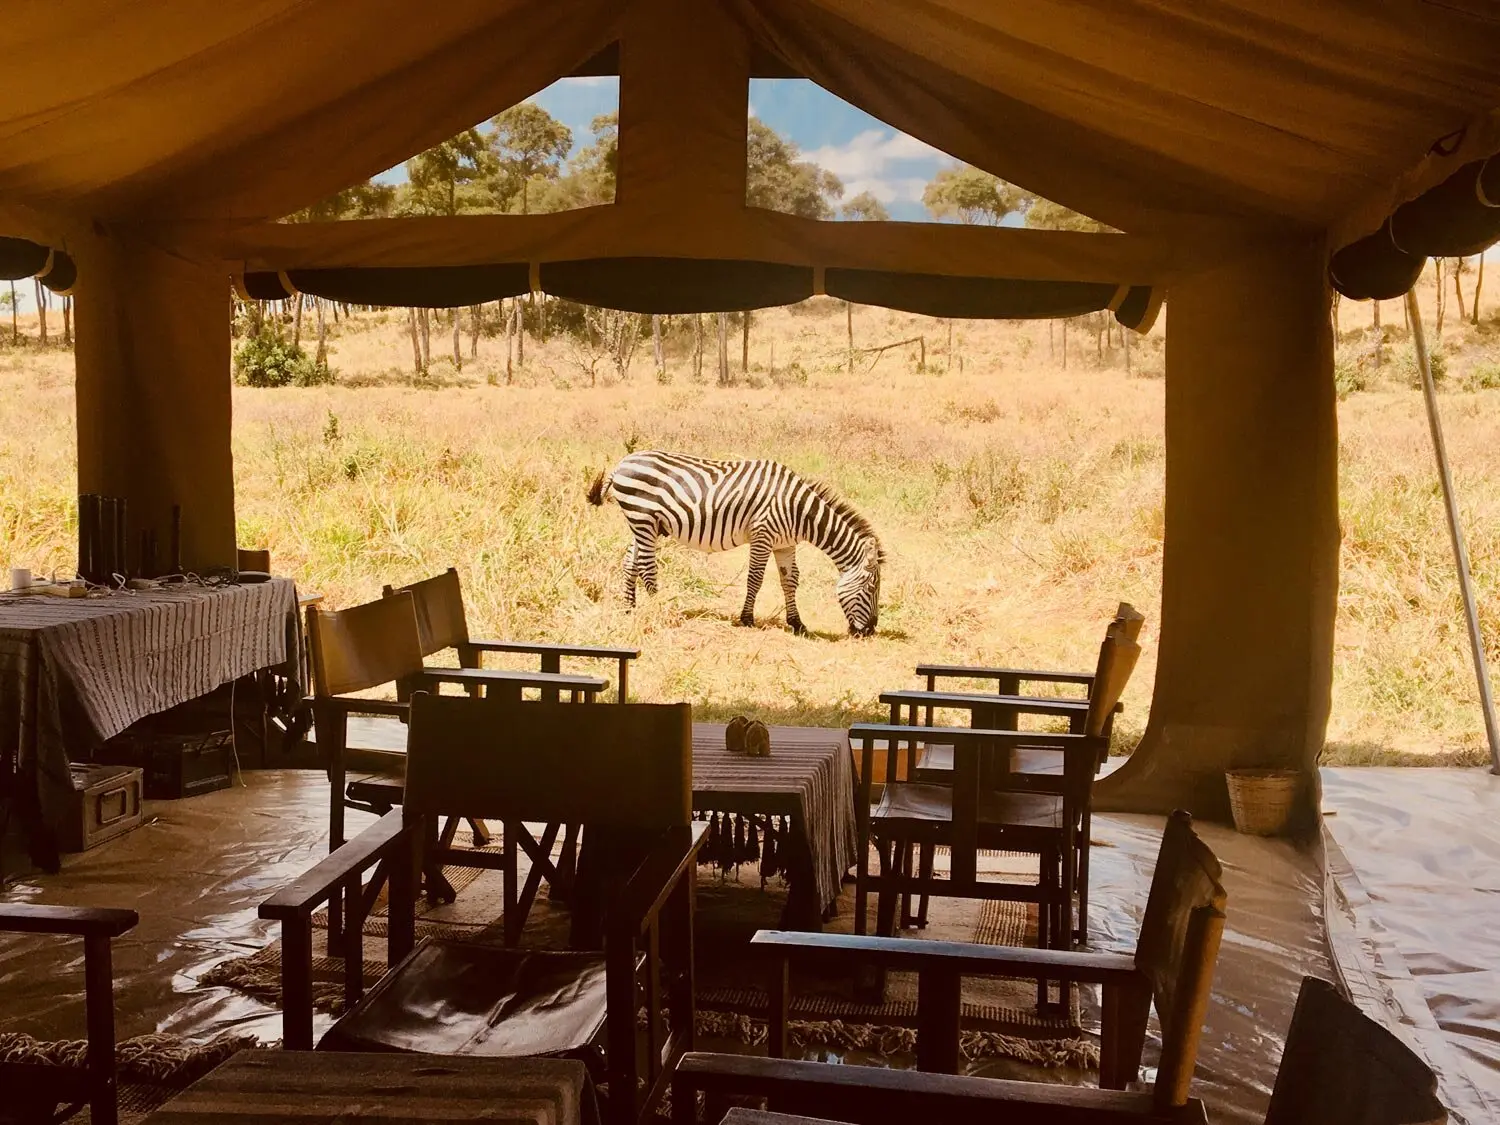 Best Kenya safari lodges for mobile camping - Mobile Expeditions Masai Mara Camp